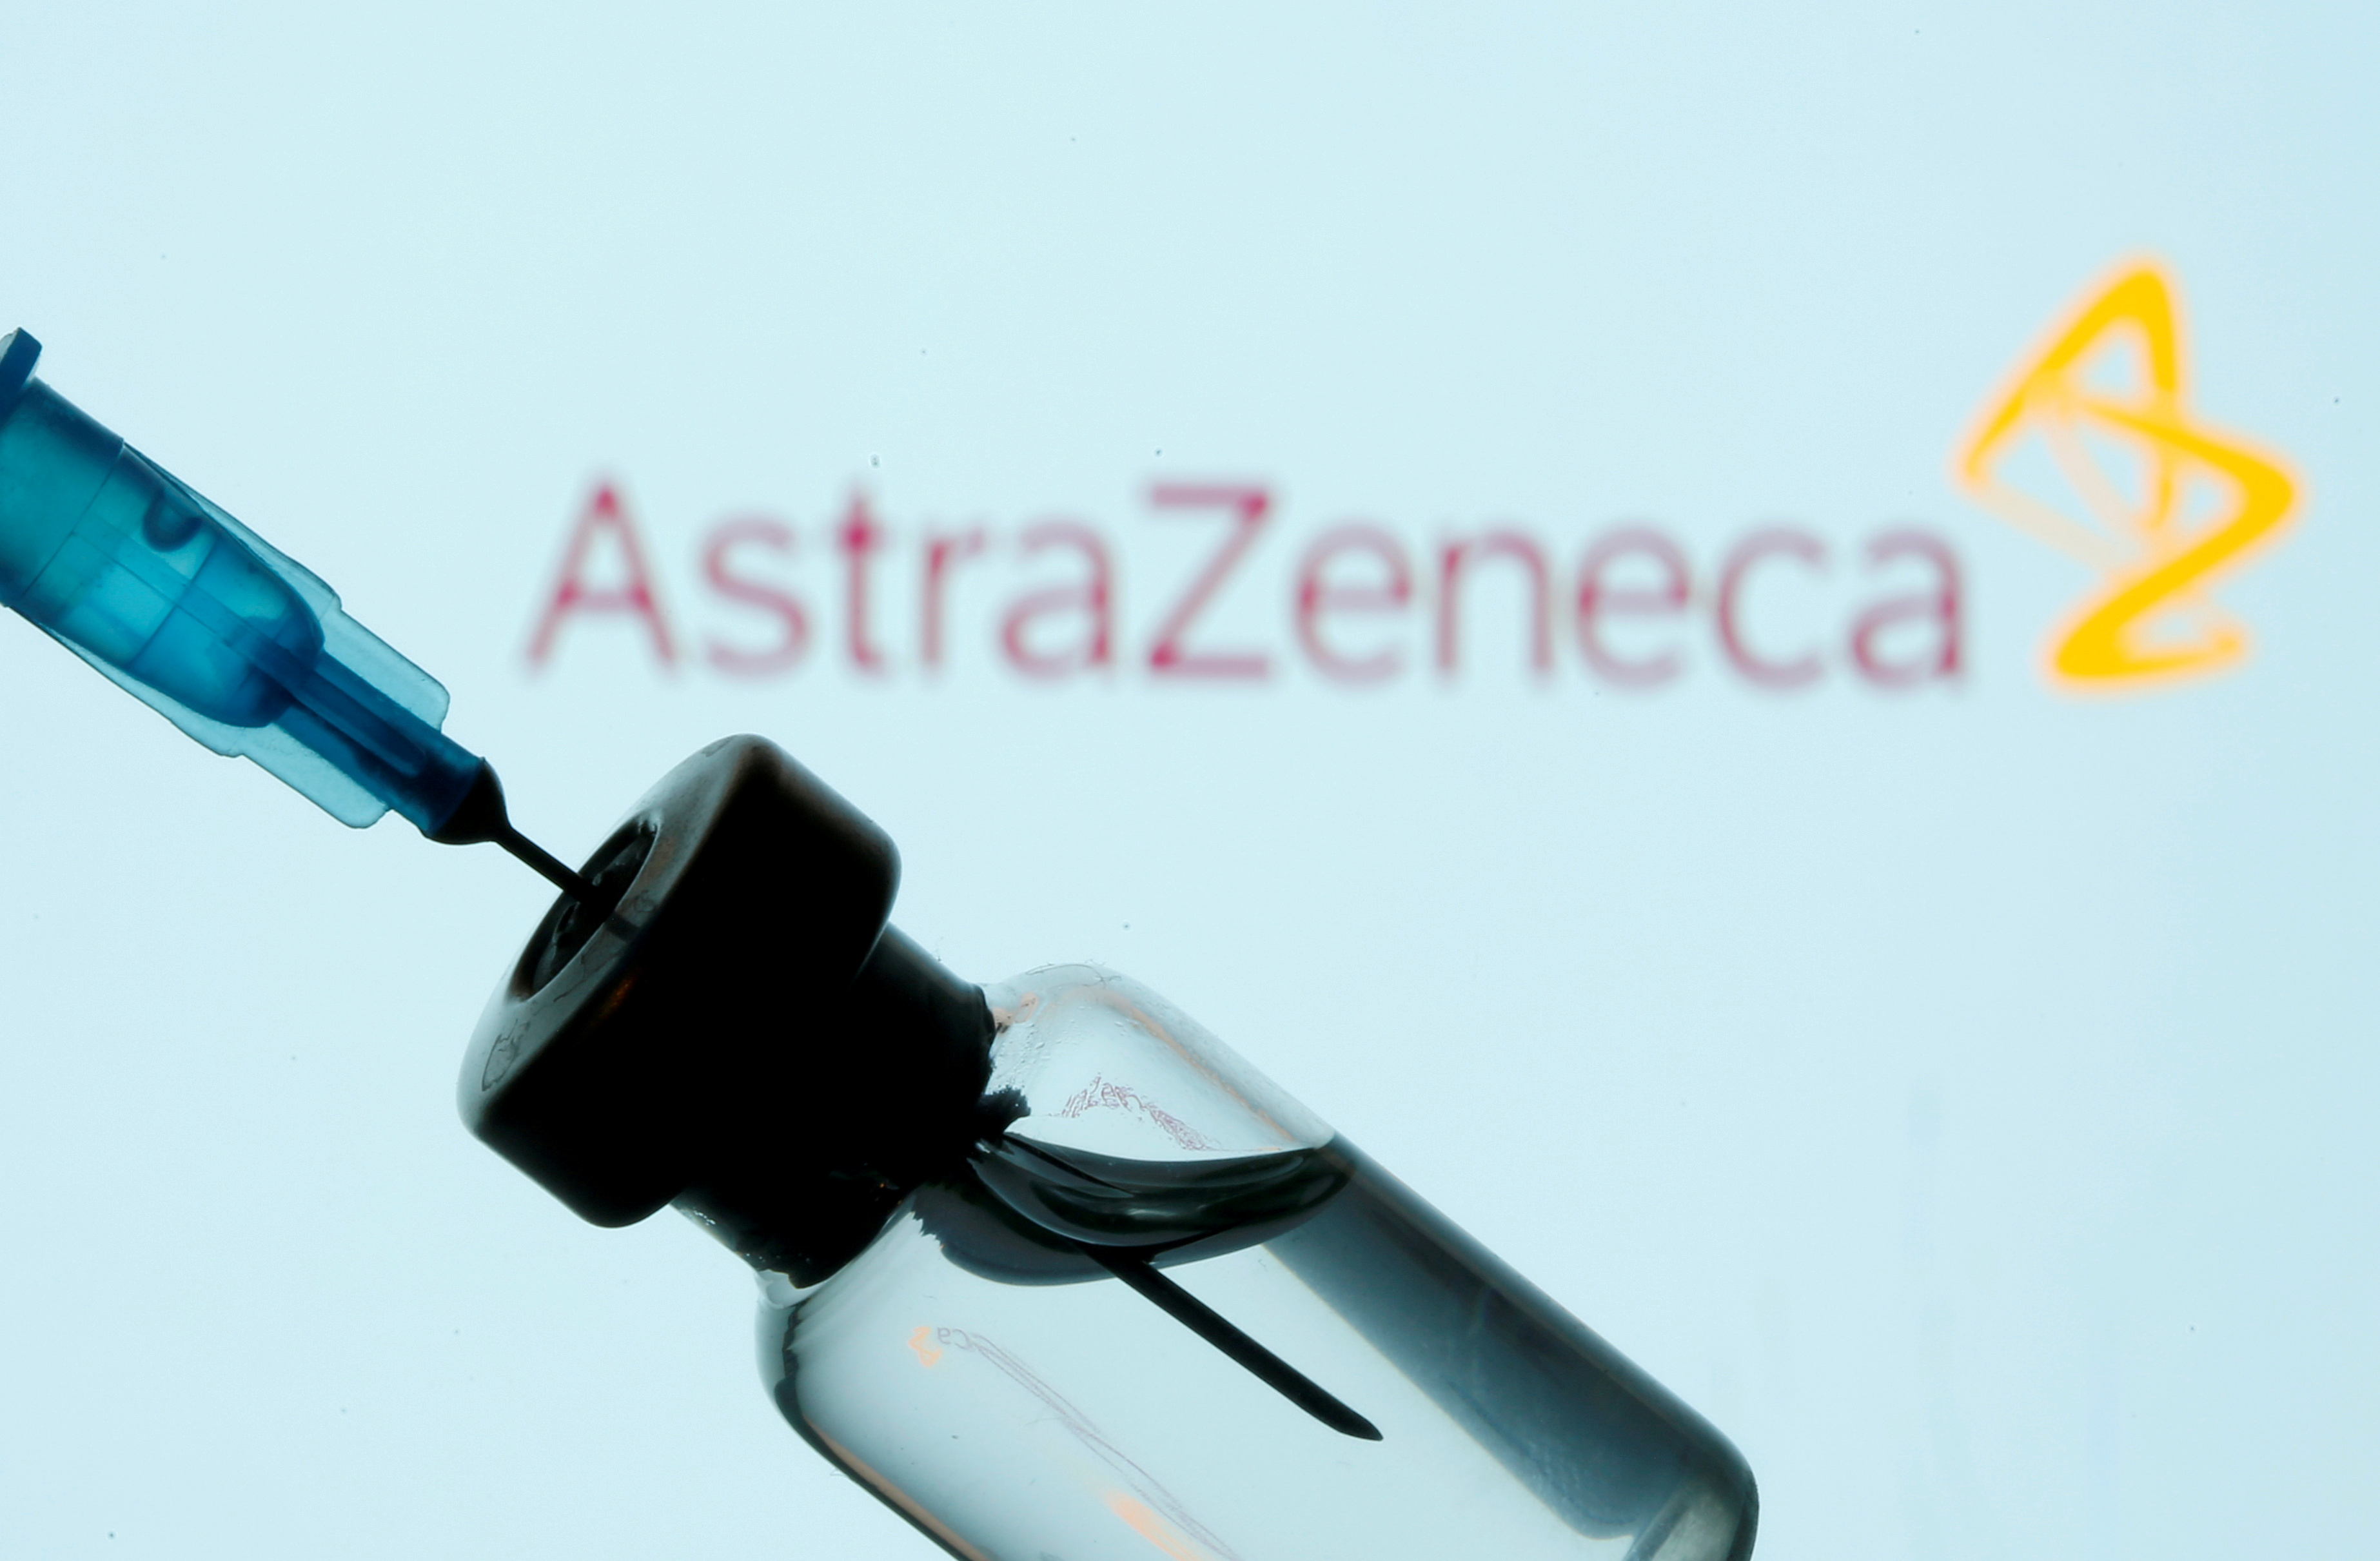 Experto venezolano sobre vacuna AstraZeneca: Condenarla por factores geopolíticos es inadecuado